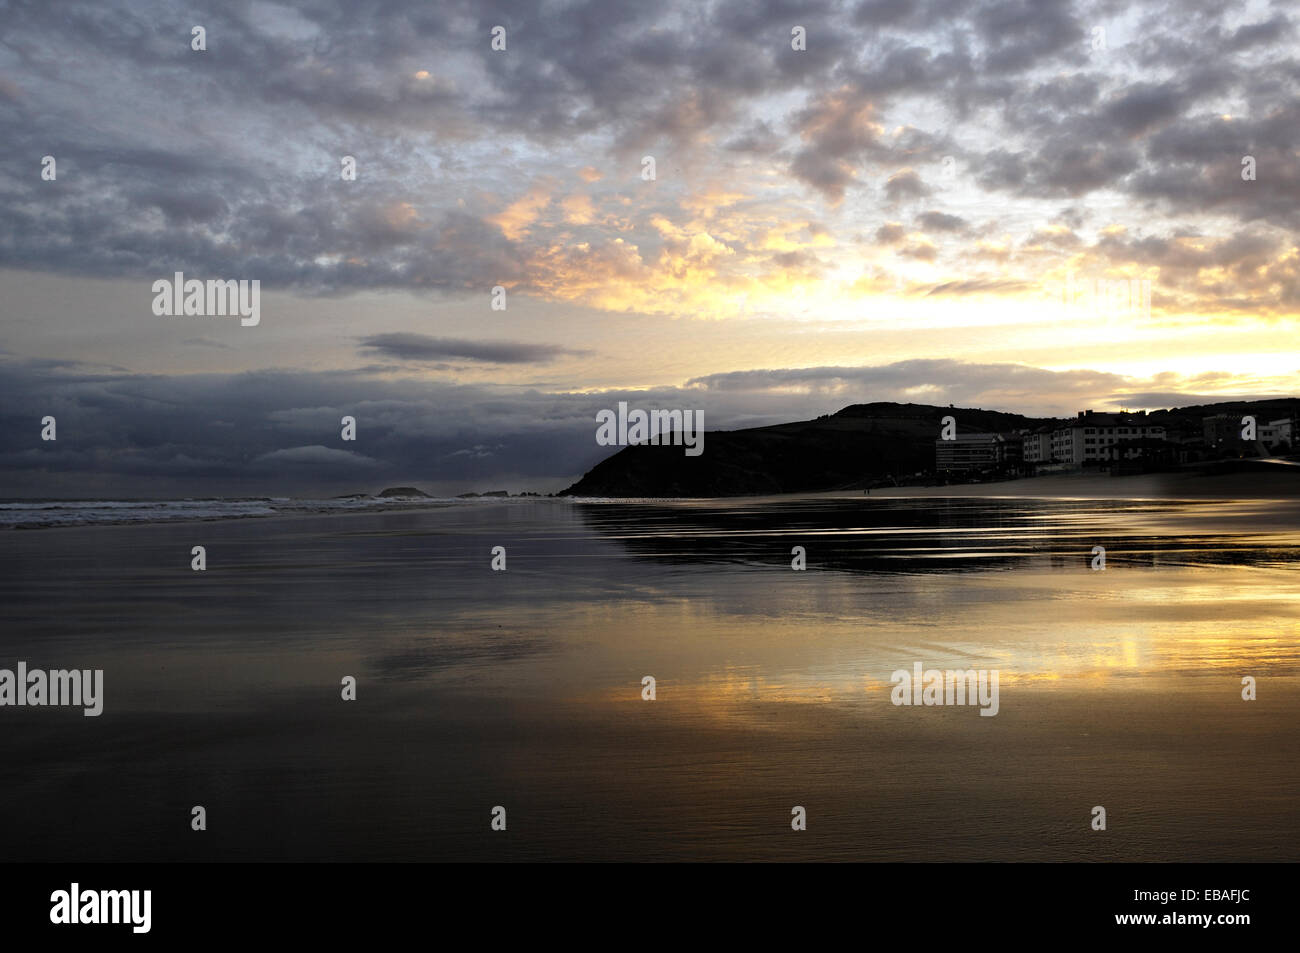 sunrise on the beach zarautz Stock Photo